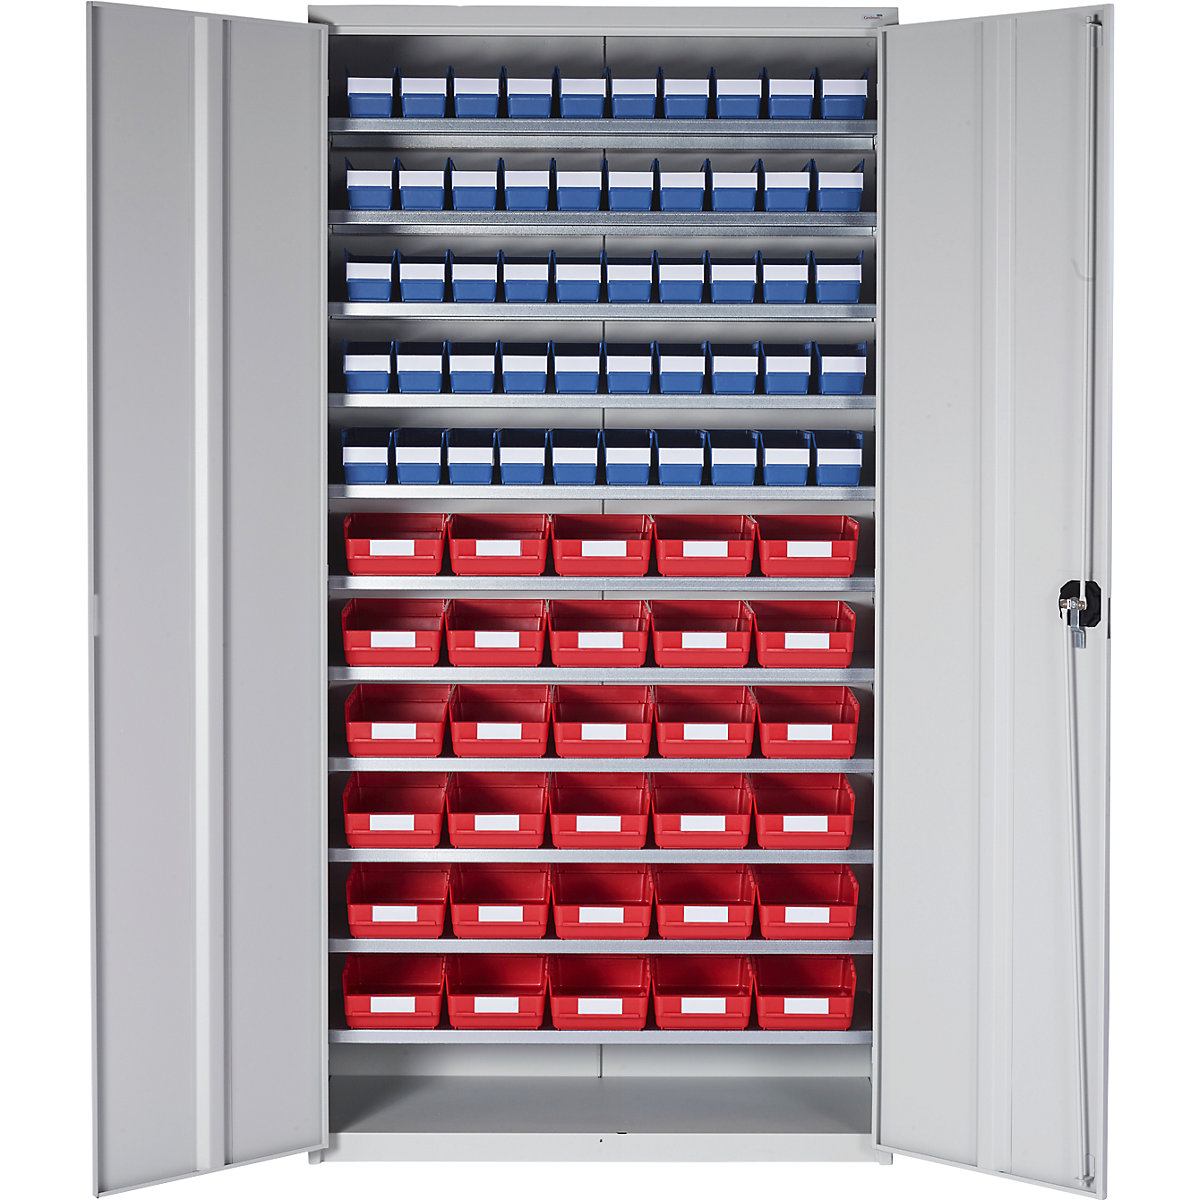 Skladová skříň – STEMO, v x š x h 1970 x 1000 x 450 mm, s regálovými přepravkami, 50 modrých přepravek, 30 červených přepravek-4